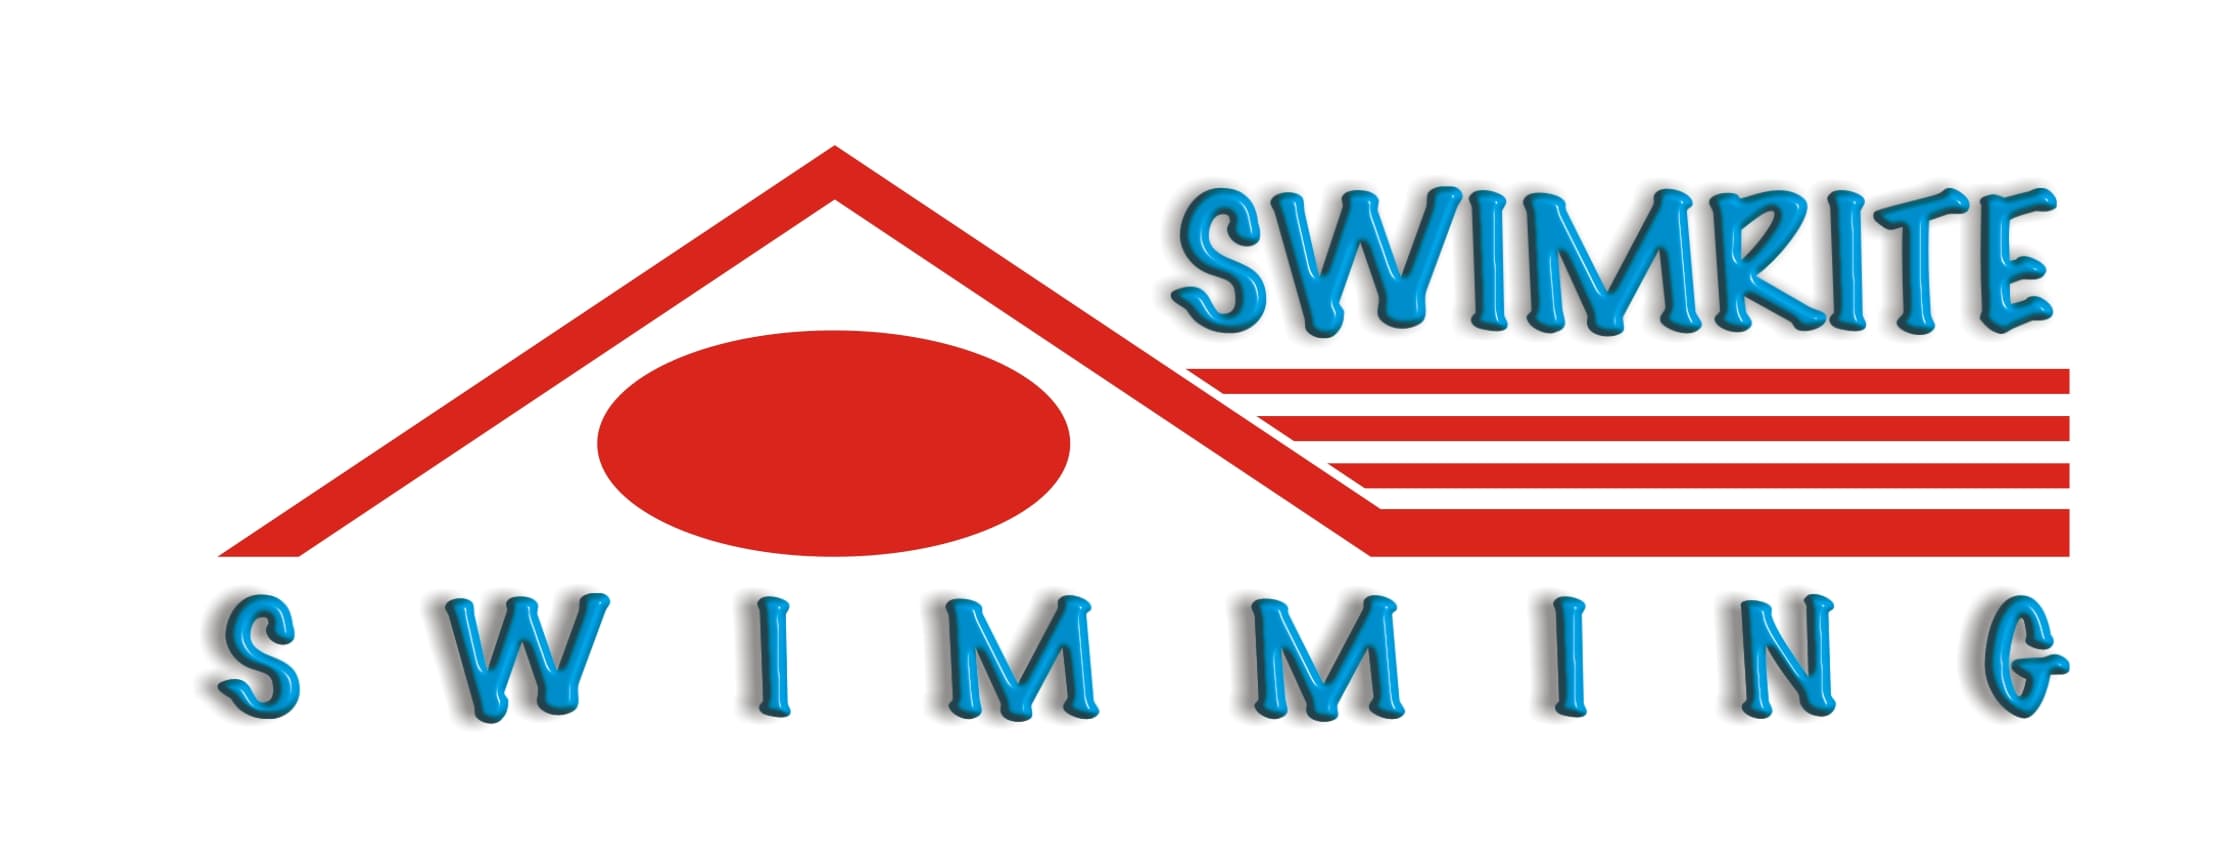 www.swimrite.co.za